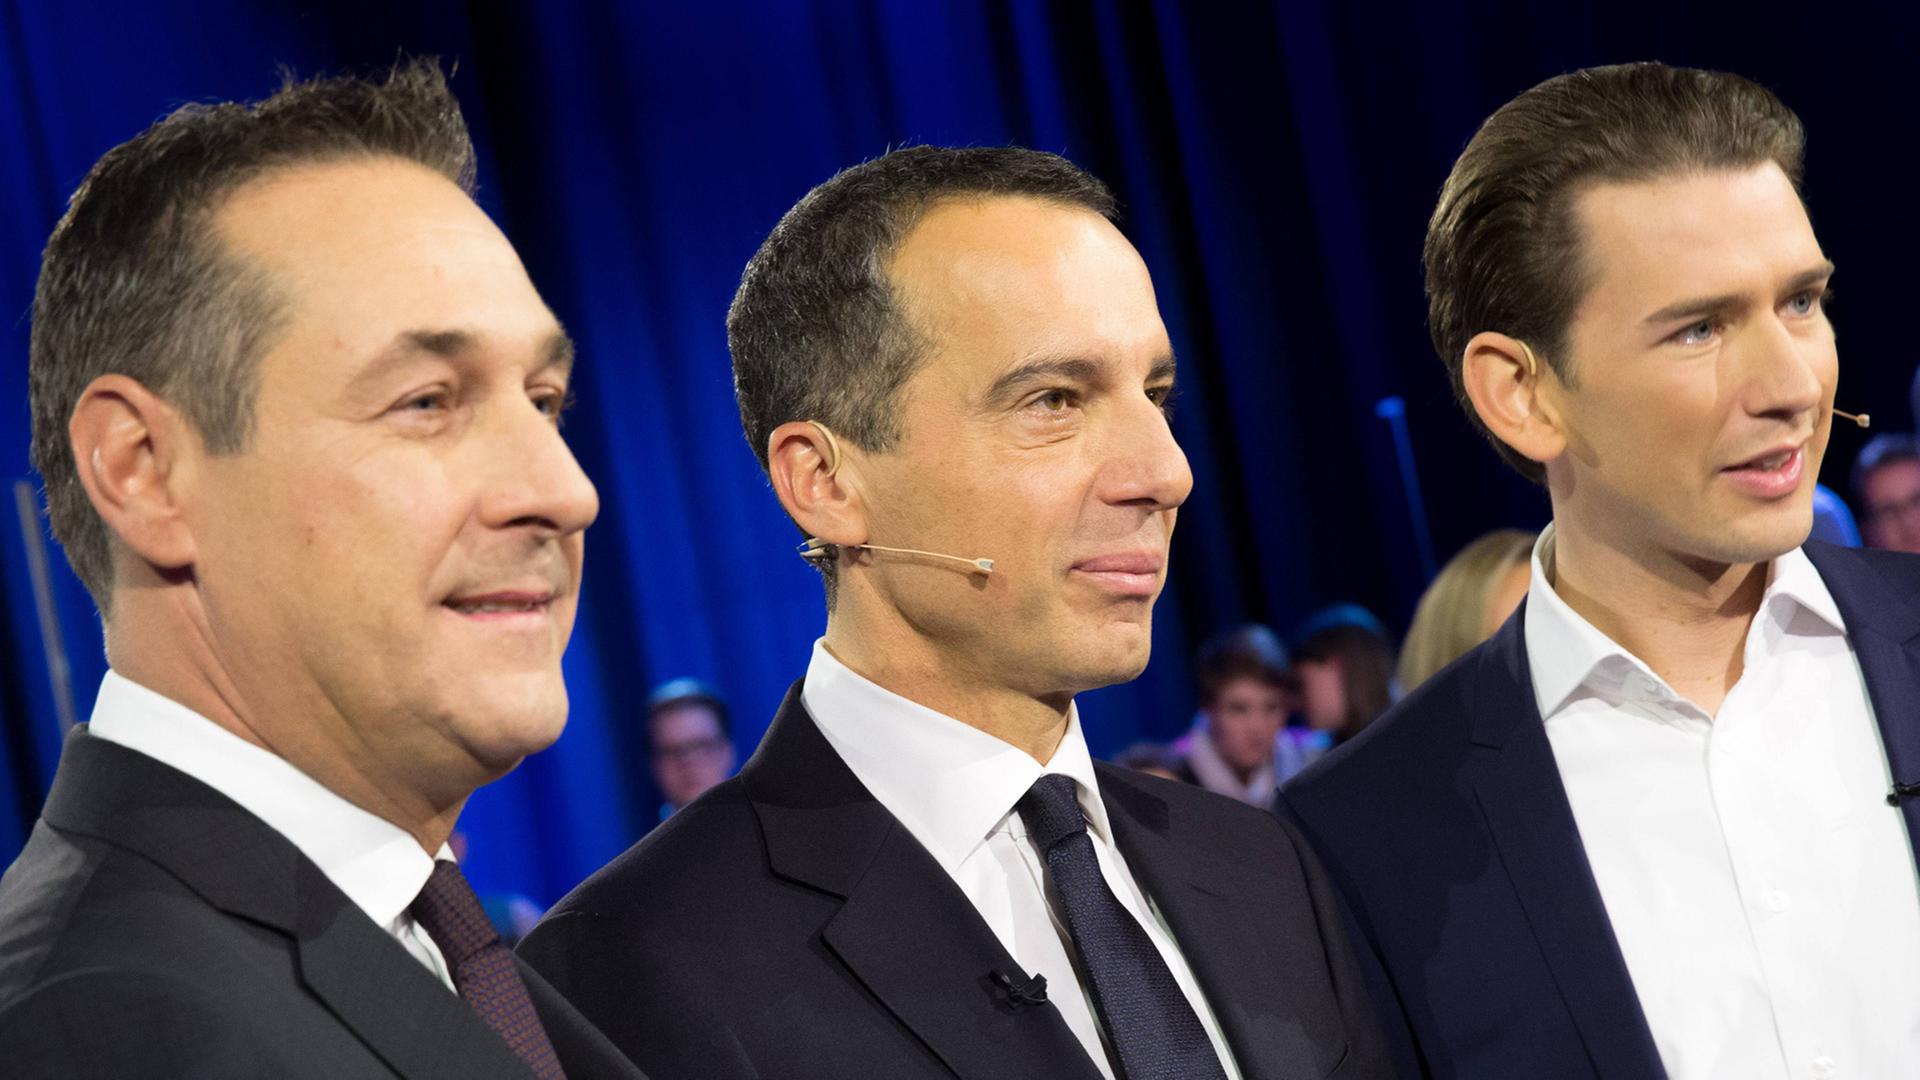 Die Spitzenkandidaten der Parteien bei der österreichischen Nationalratswahl: Heinz-Christian Strache (FPÖ), Christian Kern (SPÖ) und Sebastian Kurz (ÖVP); hier am 8. Oktober beim Privatsender Puls4